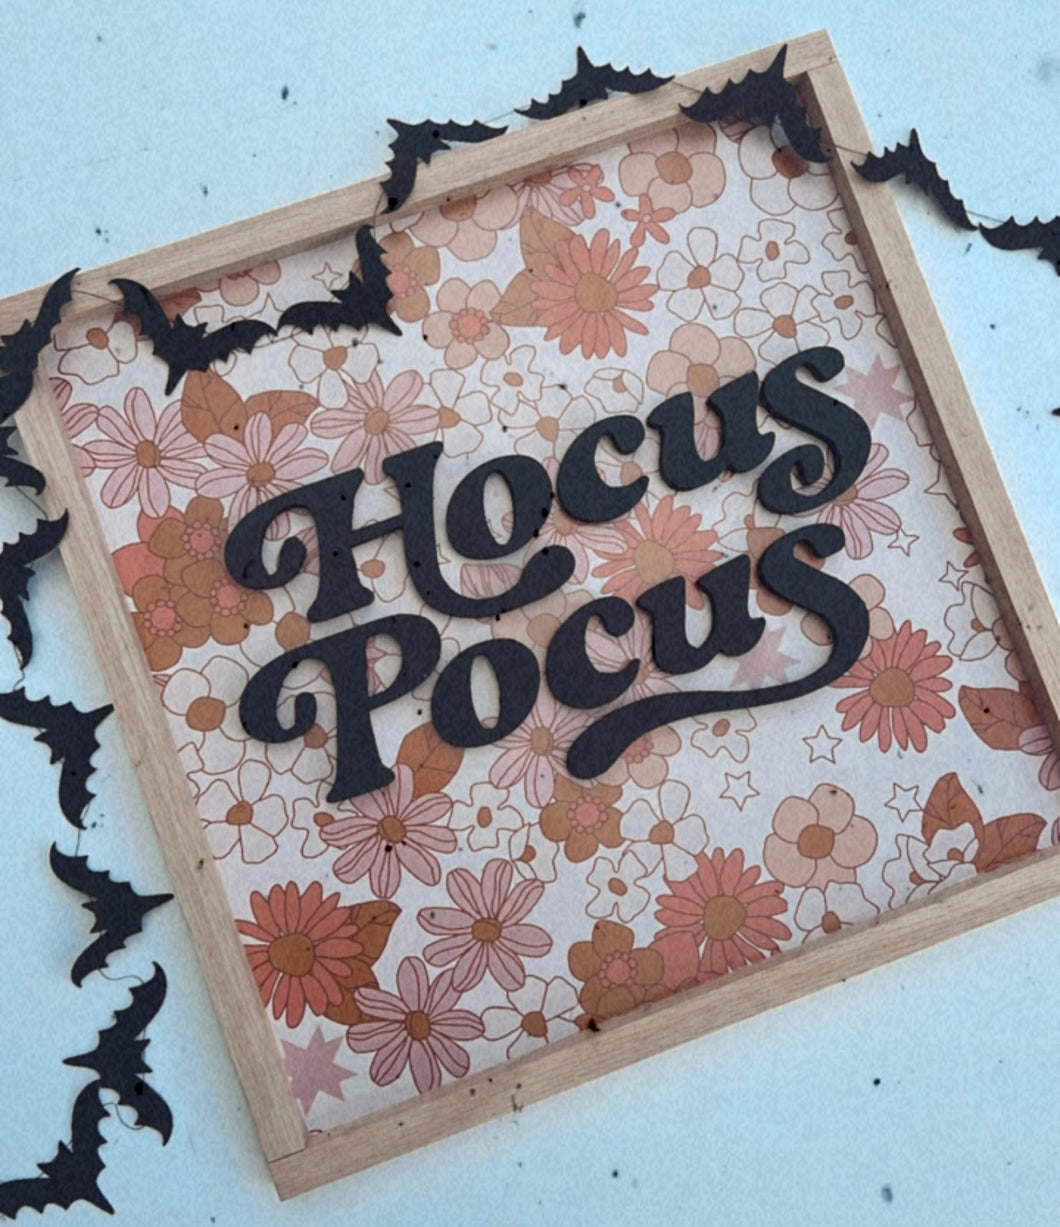 Hocus Pocus- floral